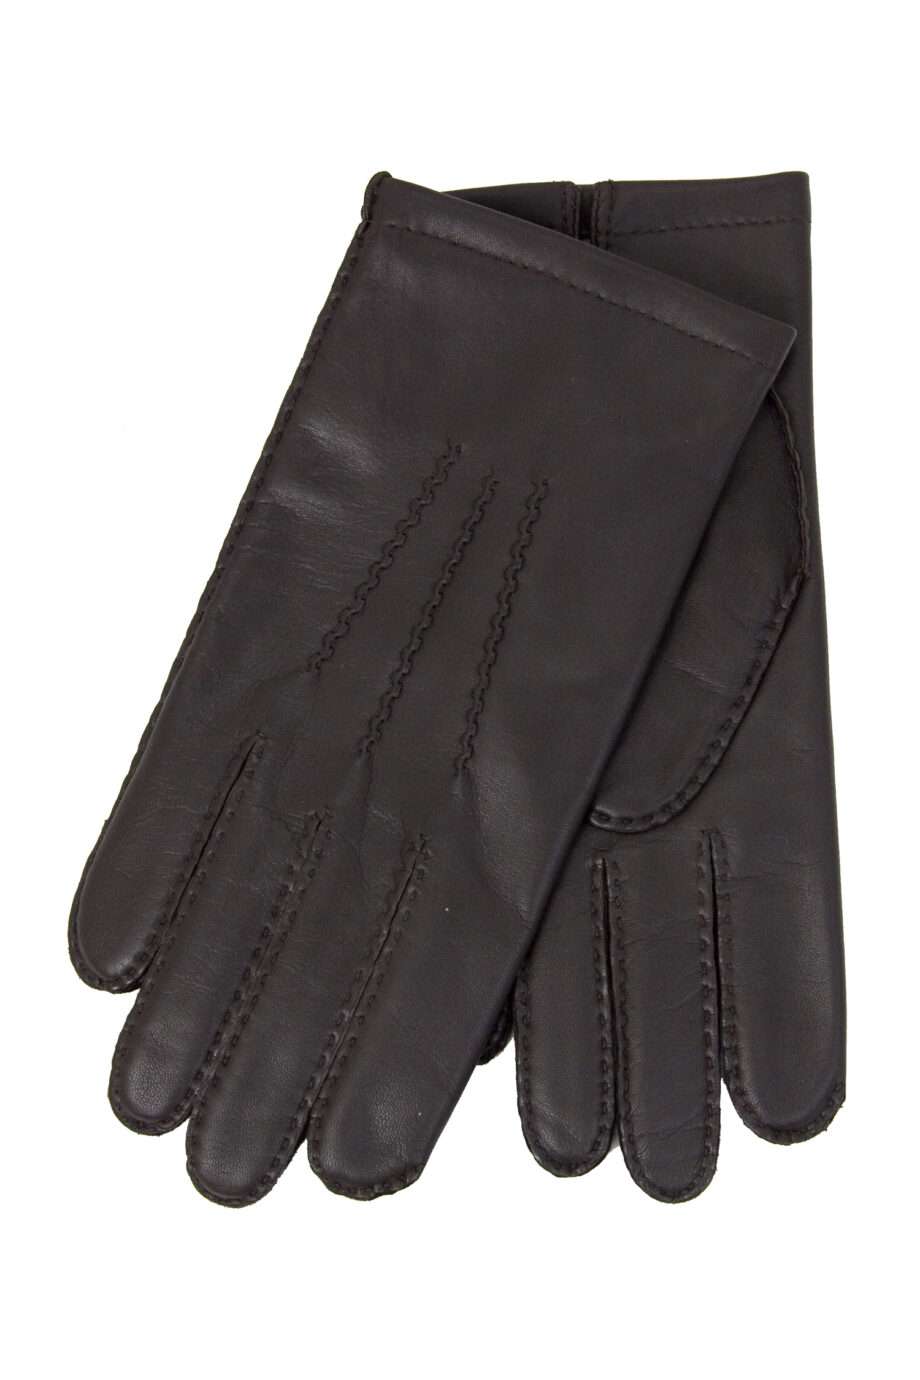 classic choc leather glove (men) medium